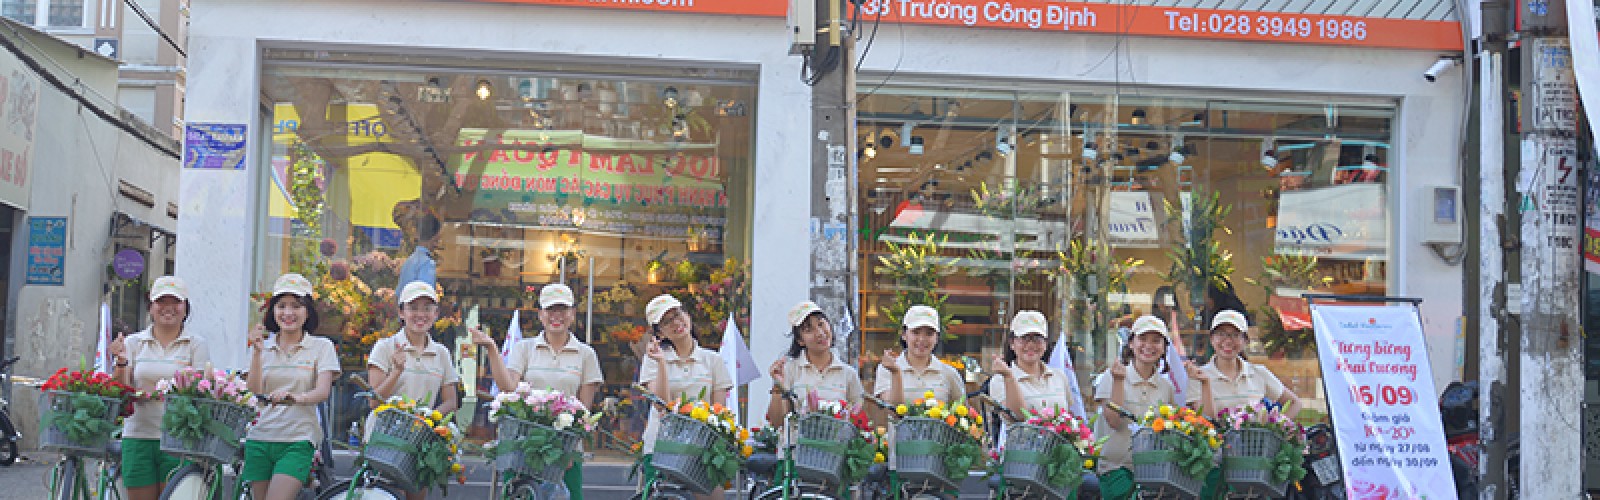 Dalat Hasfarm khai trương cửa hàng mới tại Tân Bình, TP.HCM